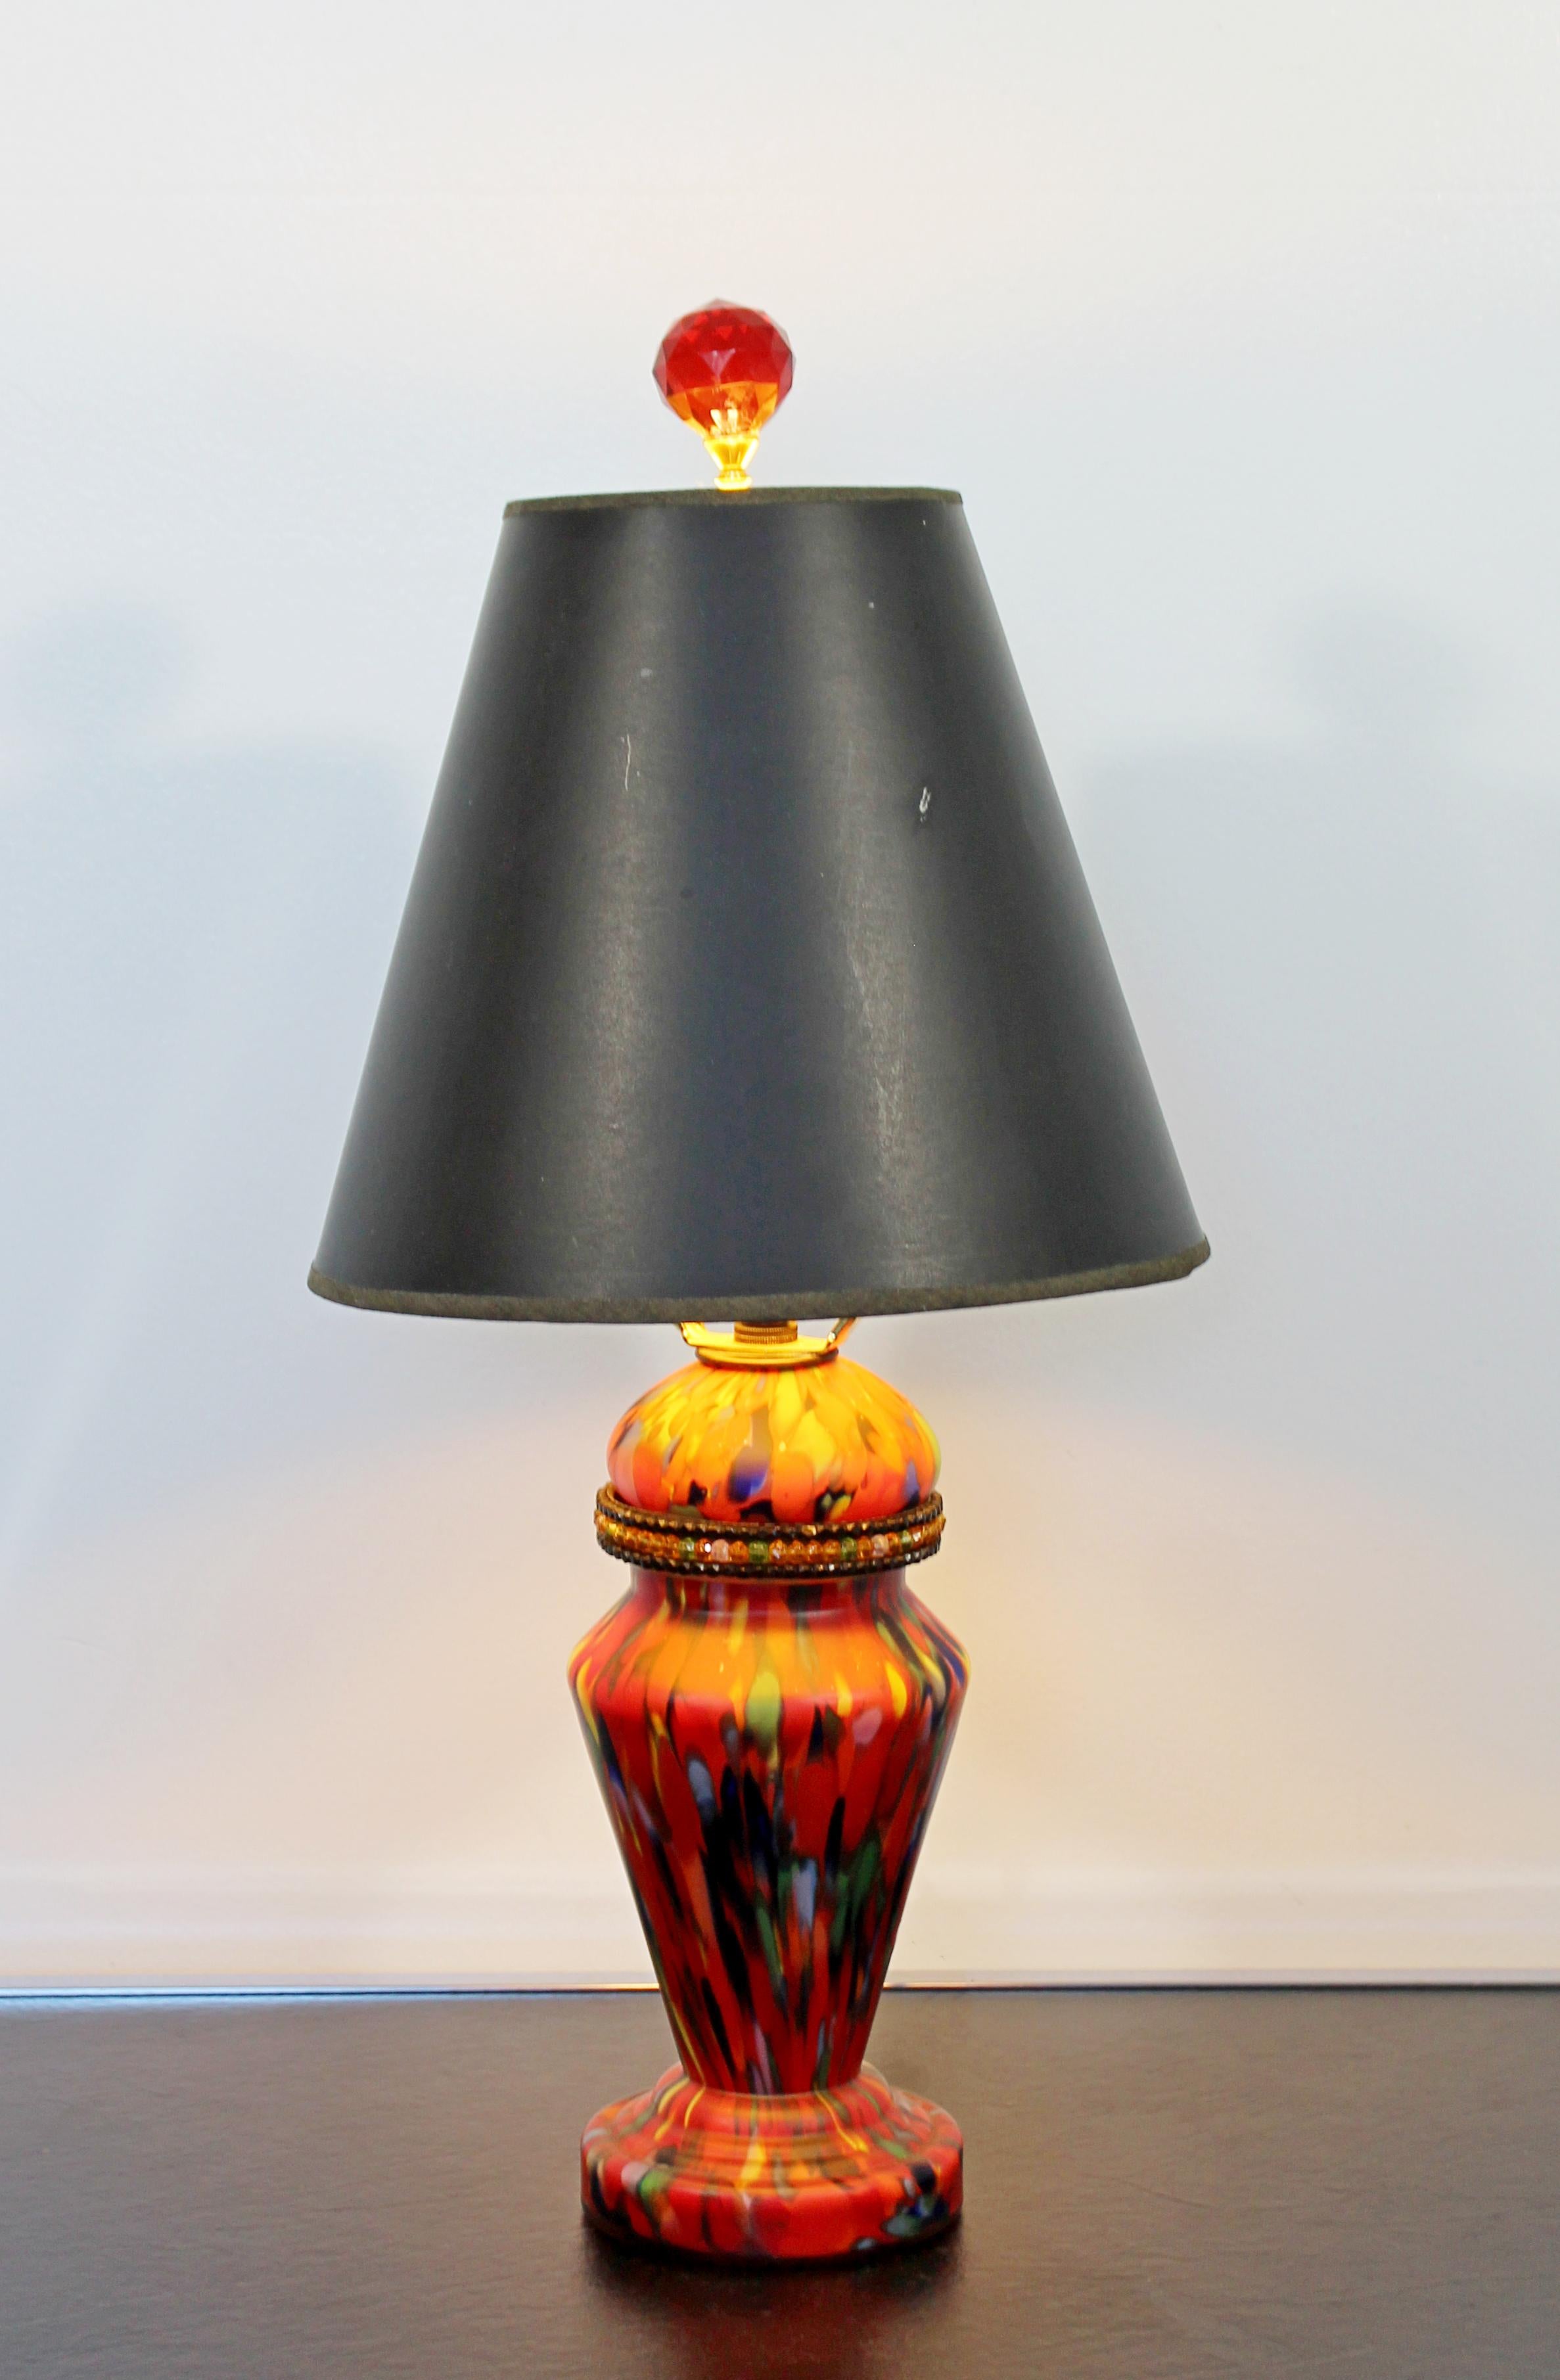 Mid-20th Century Art Deco Czech Art Glass Beads 3 Way Light Table Lamp Original Finial